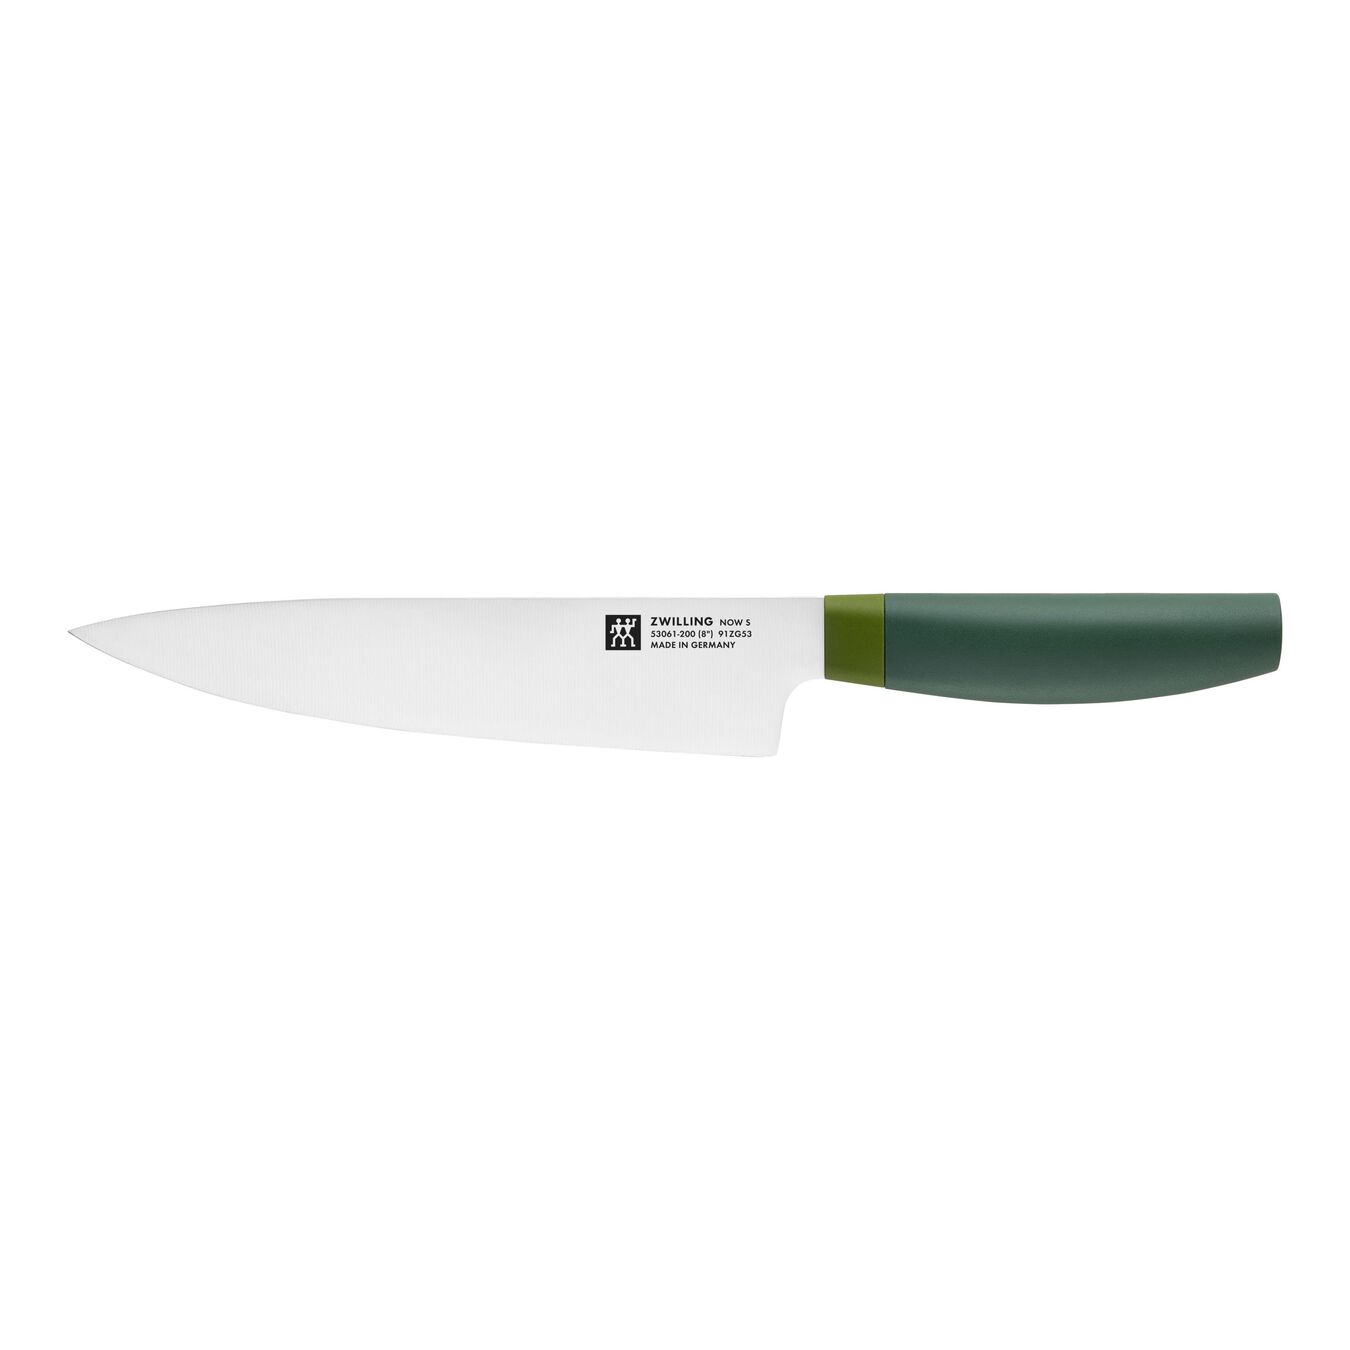 Taco de cuchillos 8-pzs, Verde,,large 5